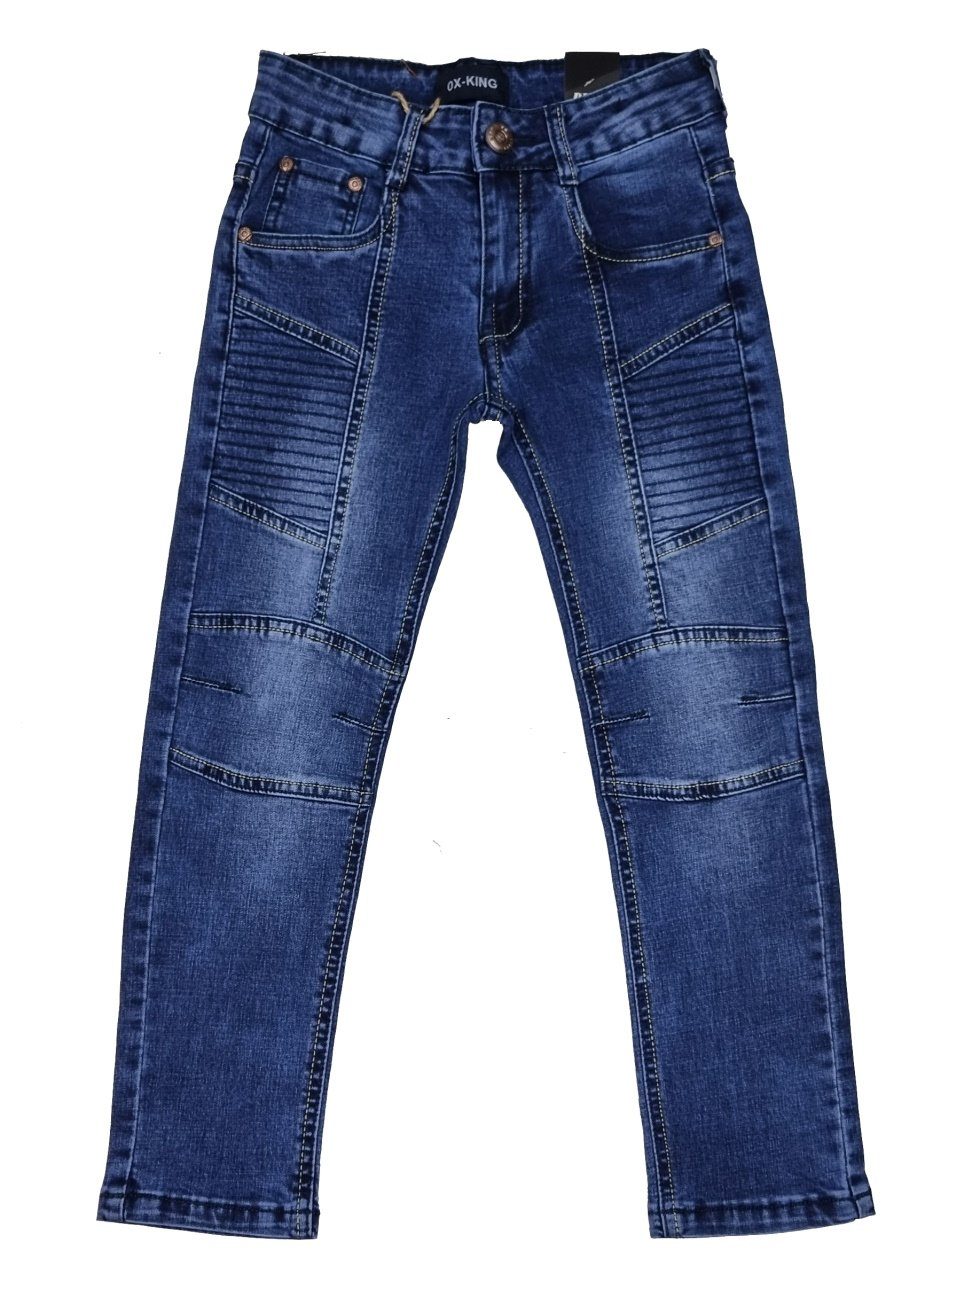 Fashion Boy Bequeme Jeans Jungen Kinder Kinderhose Jeans Jeanshose, J630 Hose